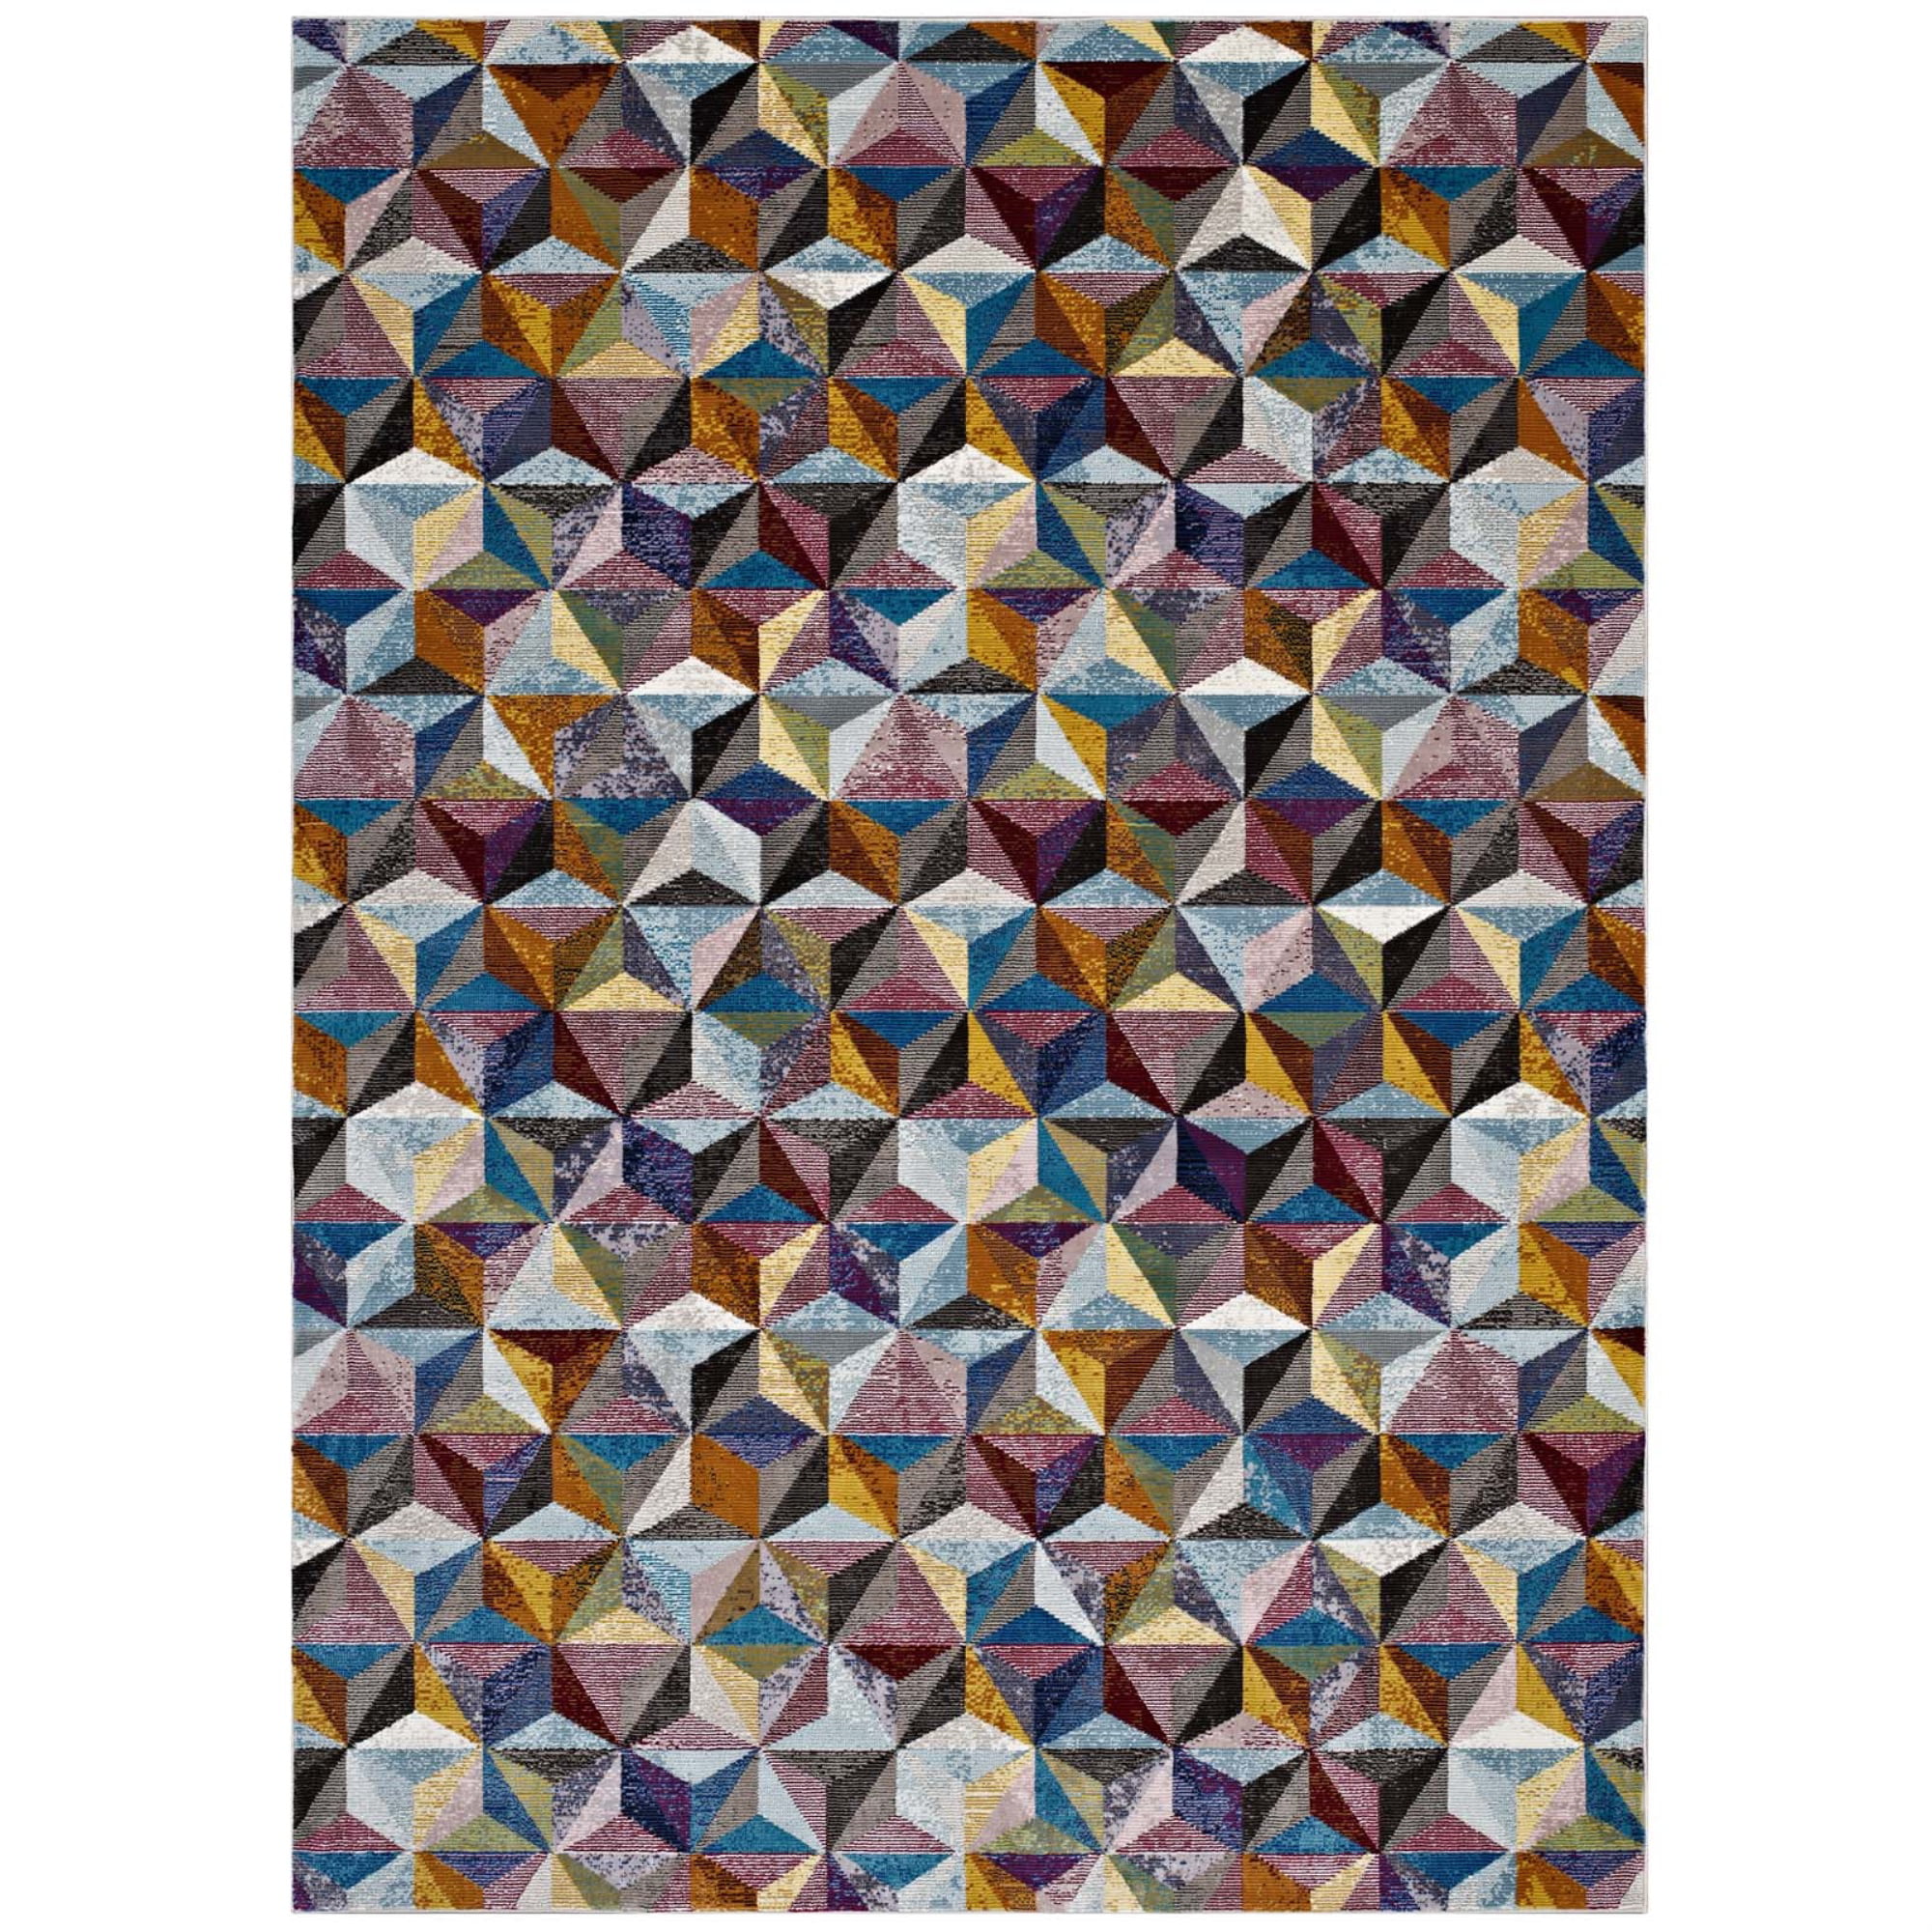 Multicolored Ergode Lavendula Triangle Mosaic 5x8 Area Rug 